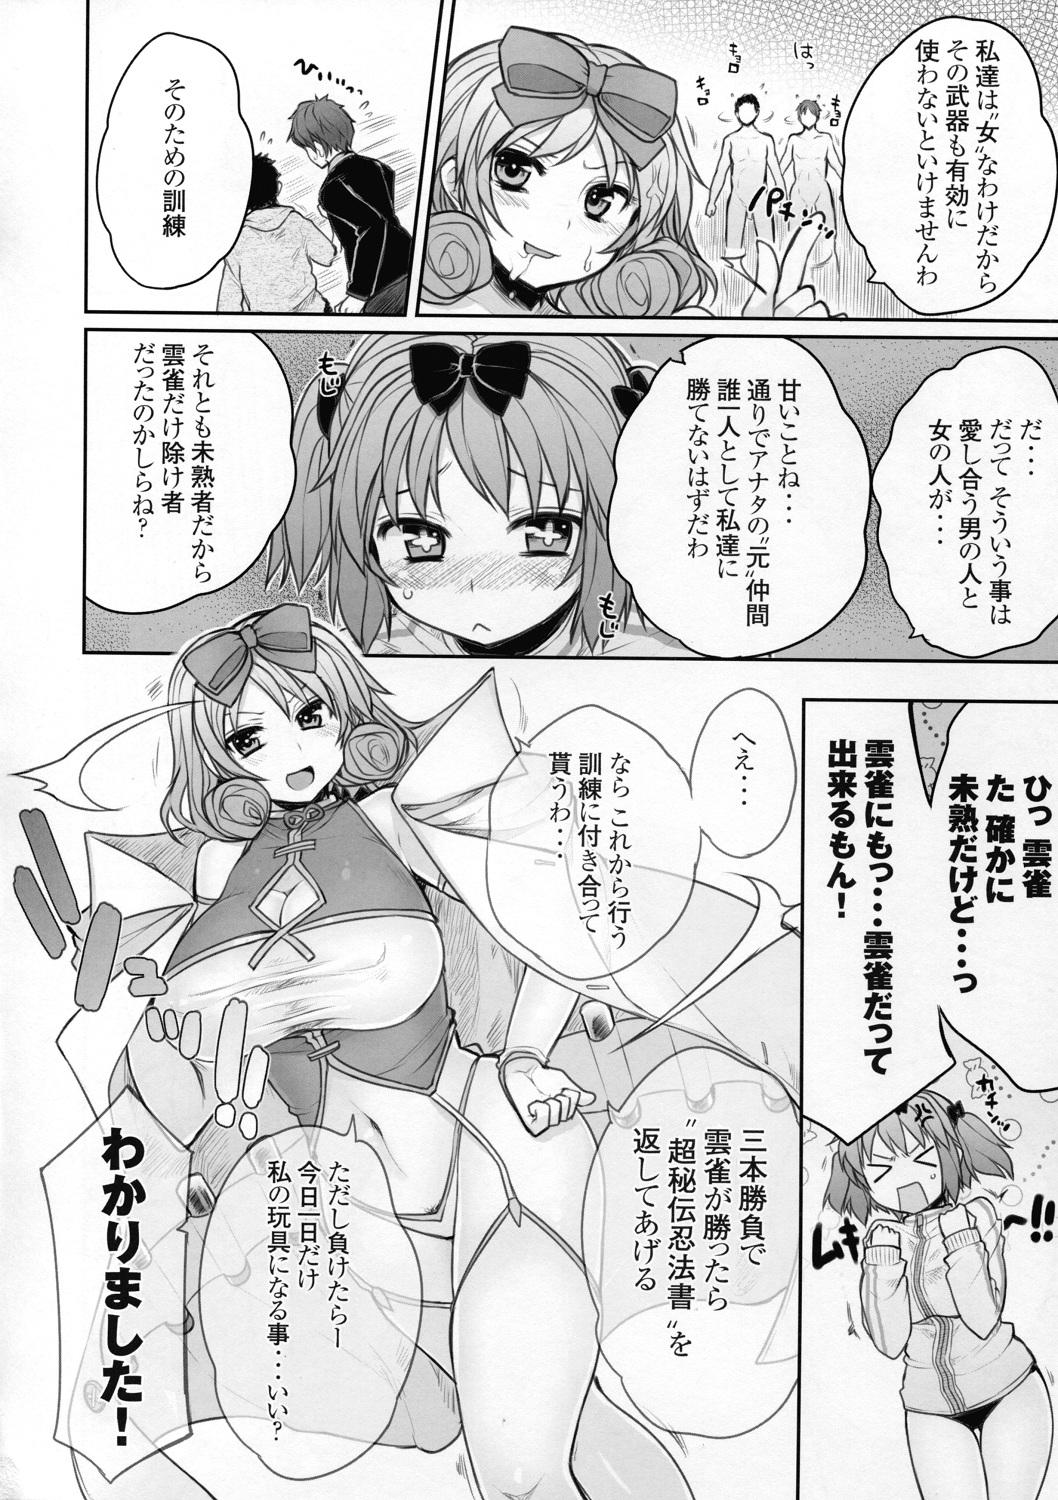 Woman Senran Chichi Ninmai 2 - Hibari Tai Haruka no Maki - Senran kagura Pinoy - Page 8